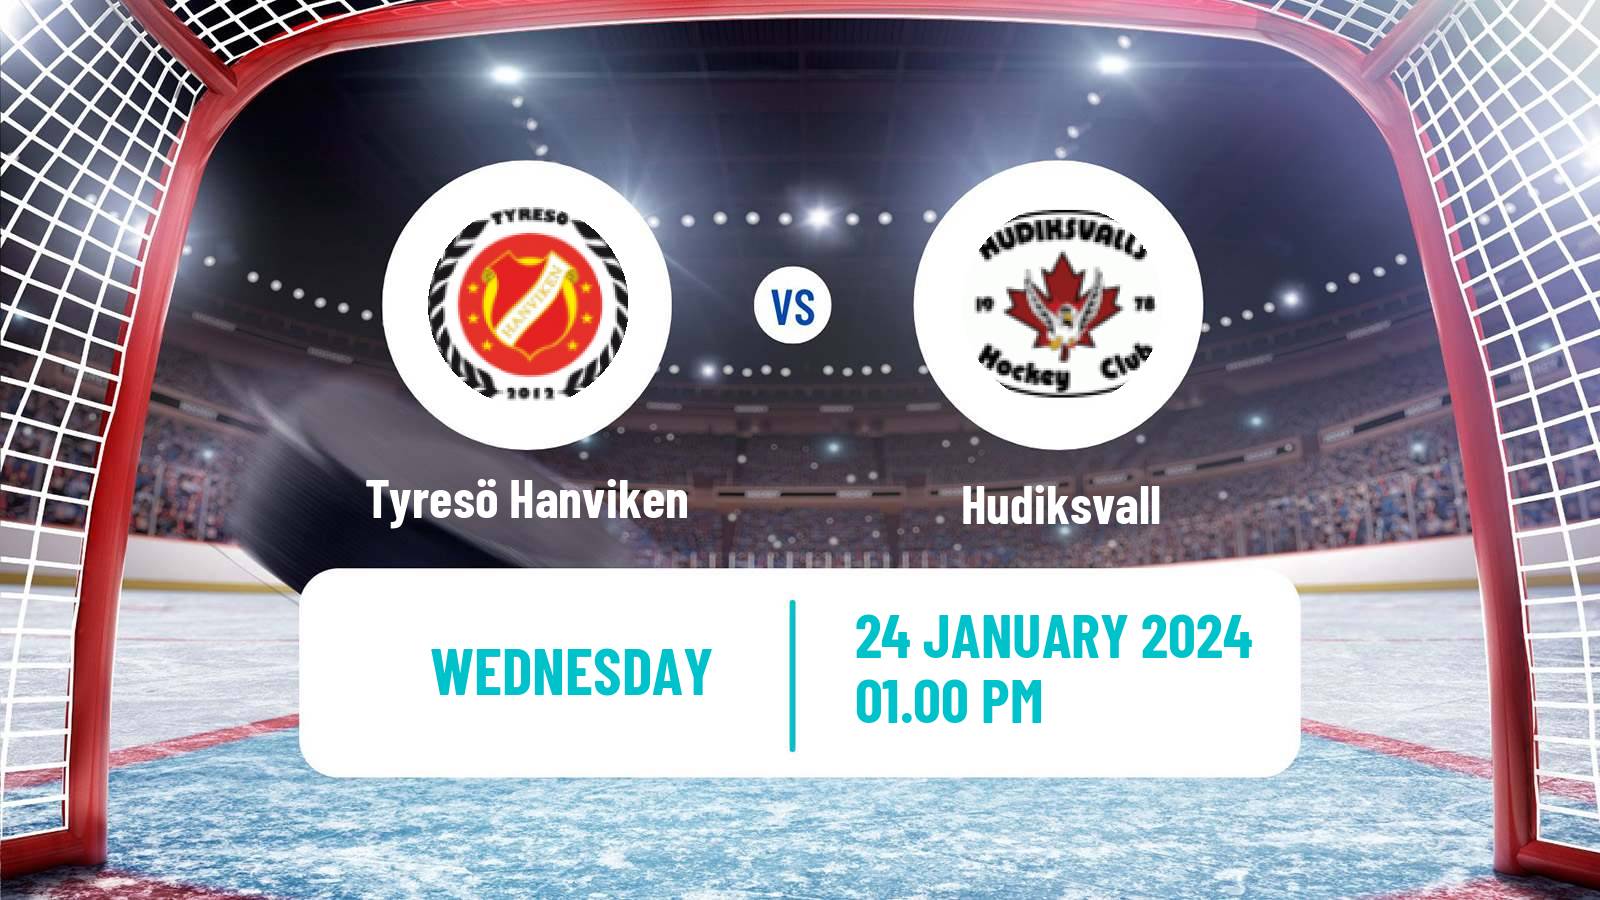 Hockey Swedish HockeyEttan Norra Tyresö Hanviken - Hudiksvall